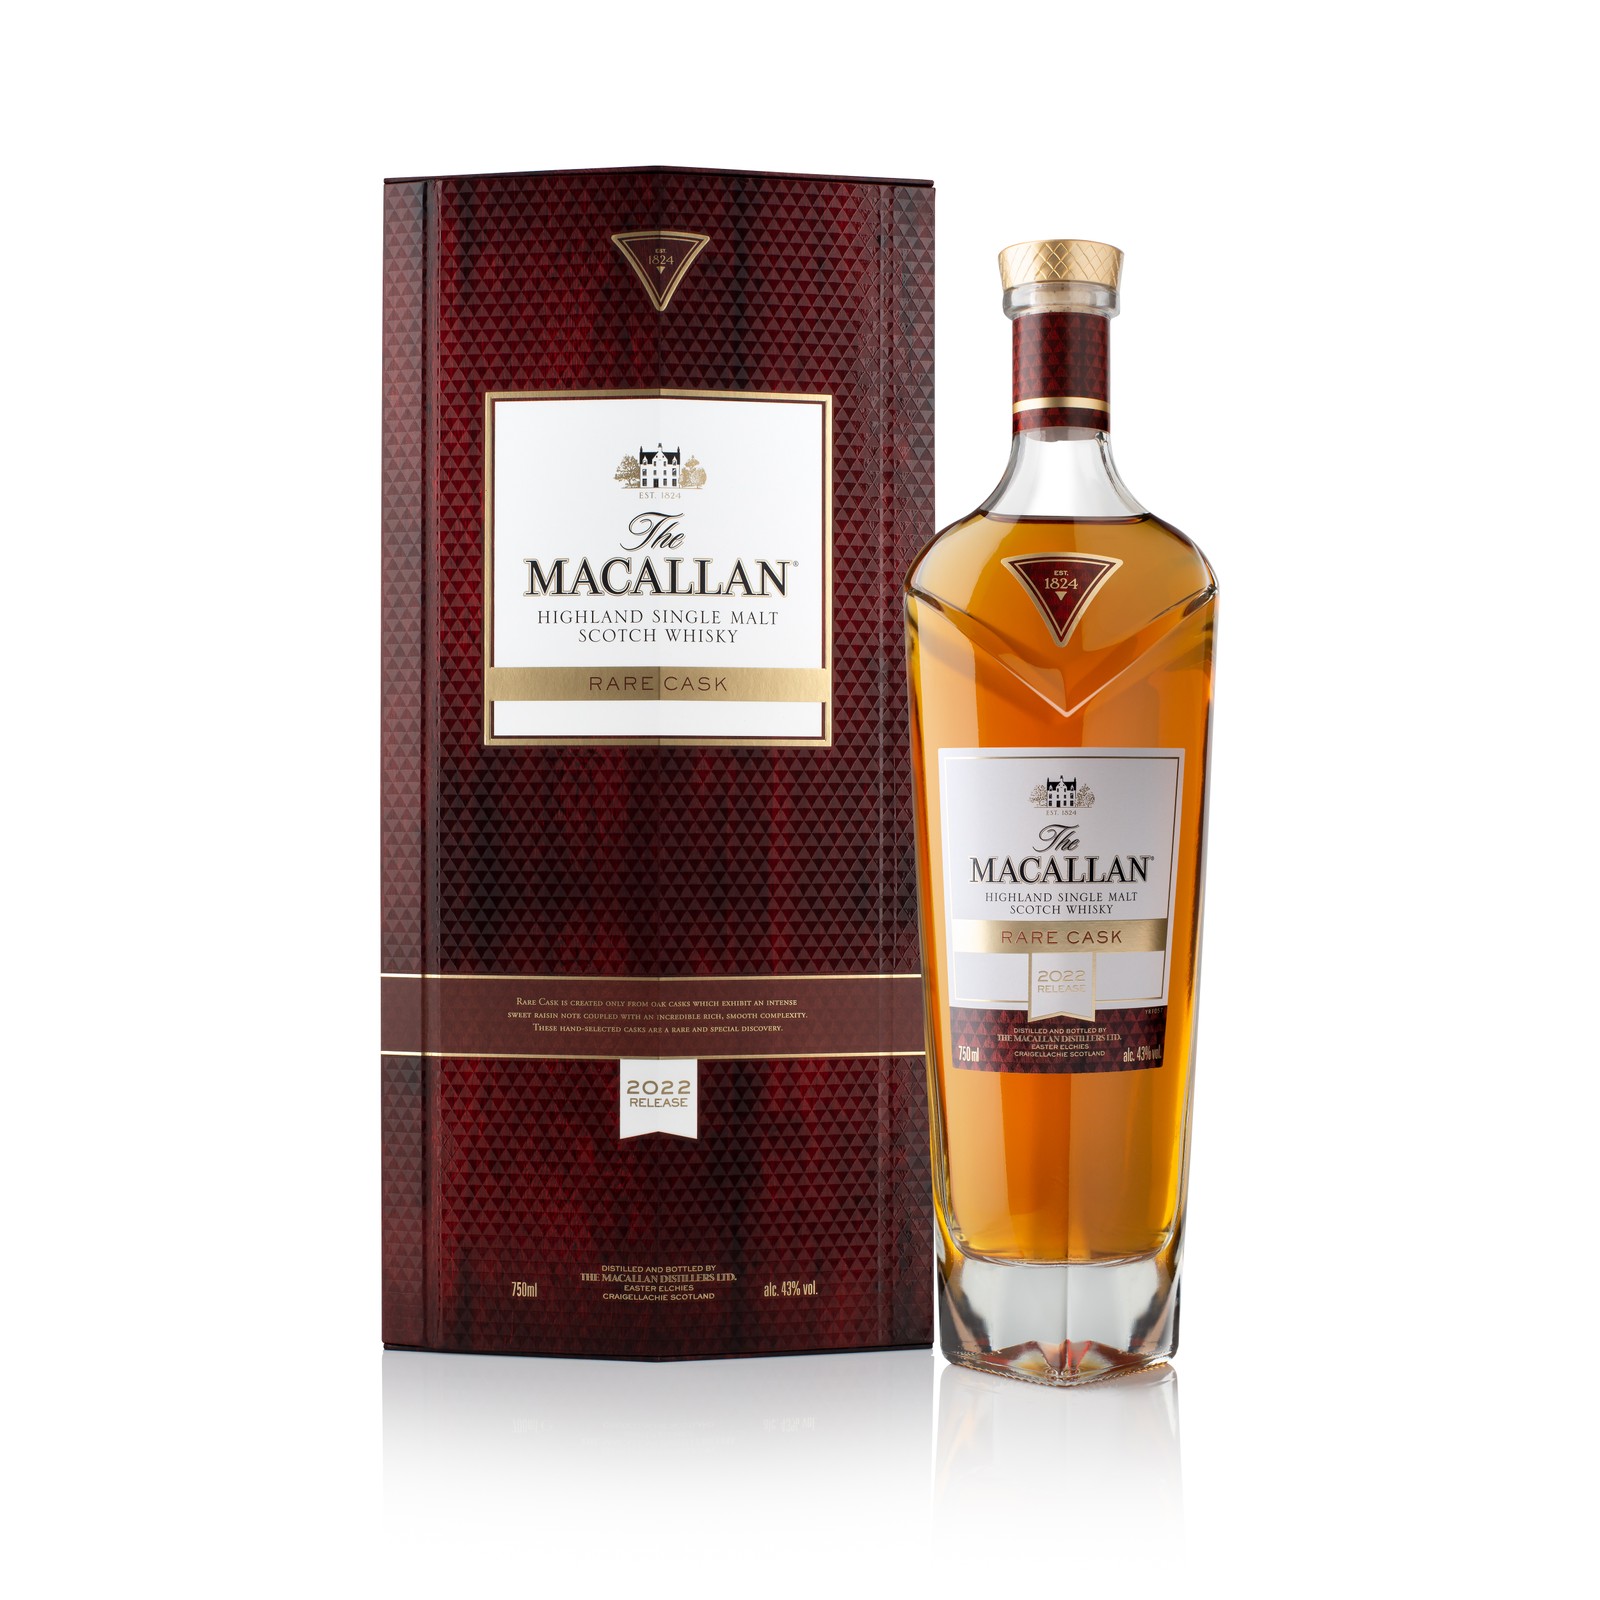 Uma das expressões mais raras da The Macallan, a Rare Cask traz um whisky sensorial de single malt para celebrar a ocasião. A garrafa da bebida está em torno de R$ 4.500 — Foto: The Macallan / Divulgação